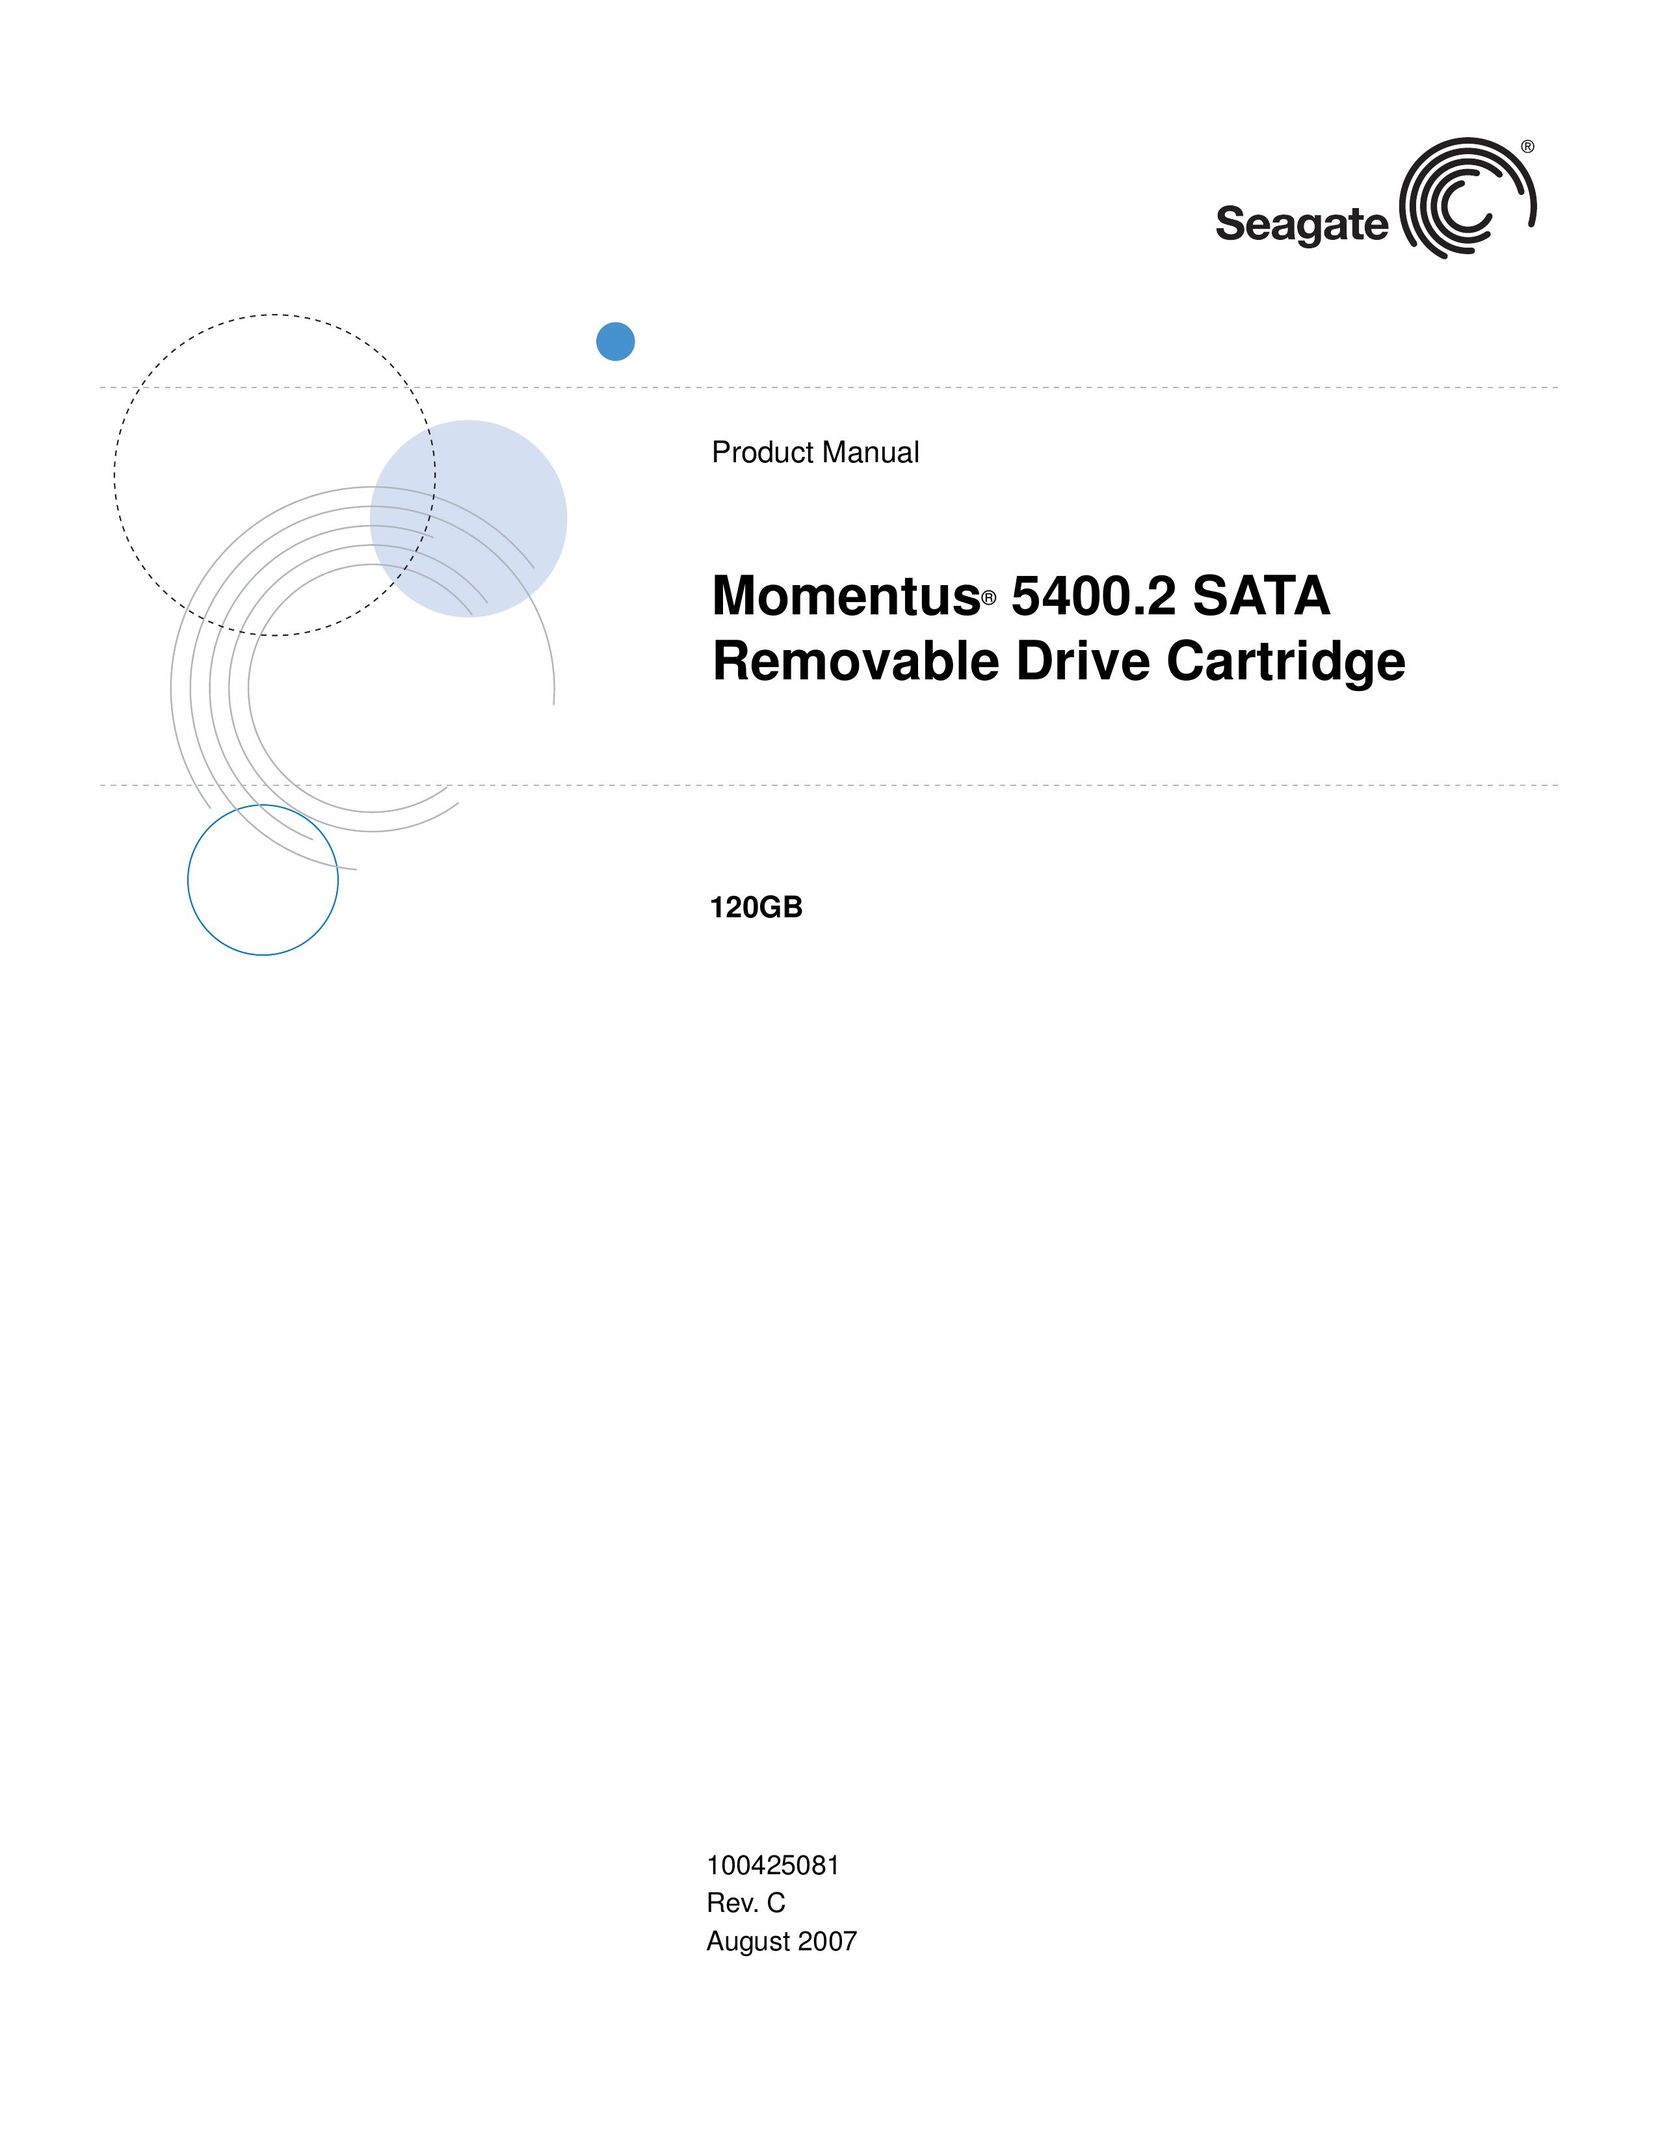 Seagate 5400.2 SATA Computer Drive User Manual